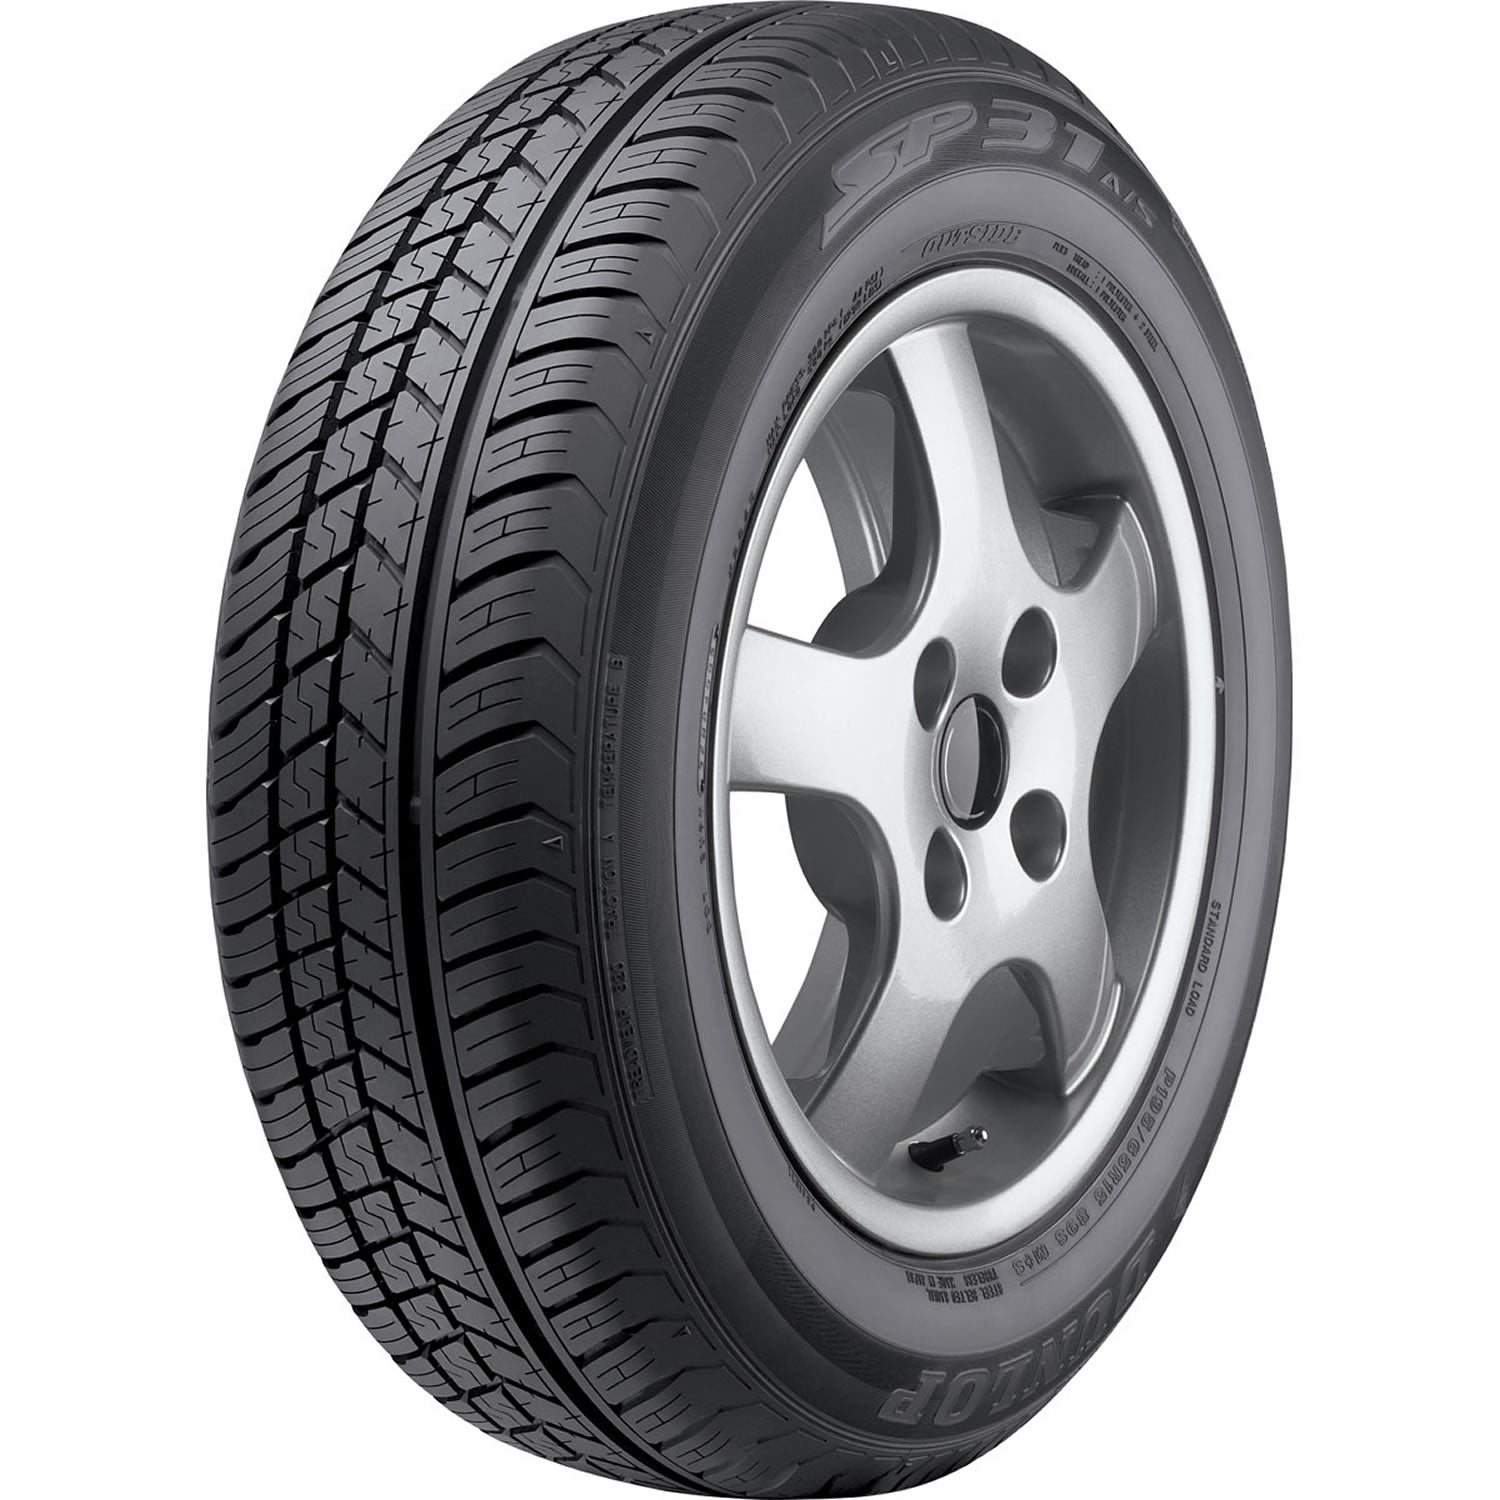 DUNLOP SP 31 P195/65R15 (25.2X7.9R 15) Tires